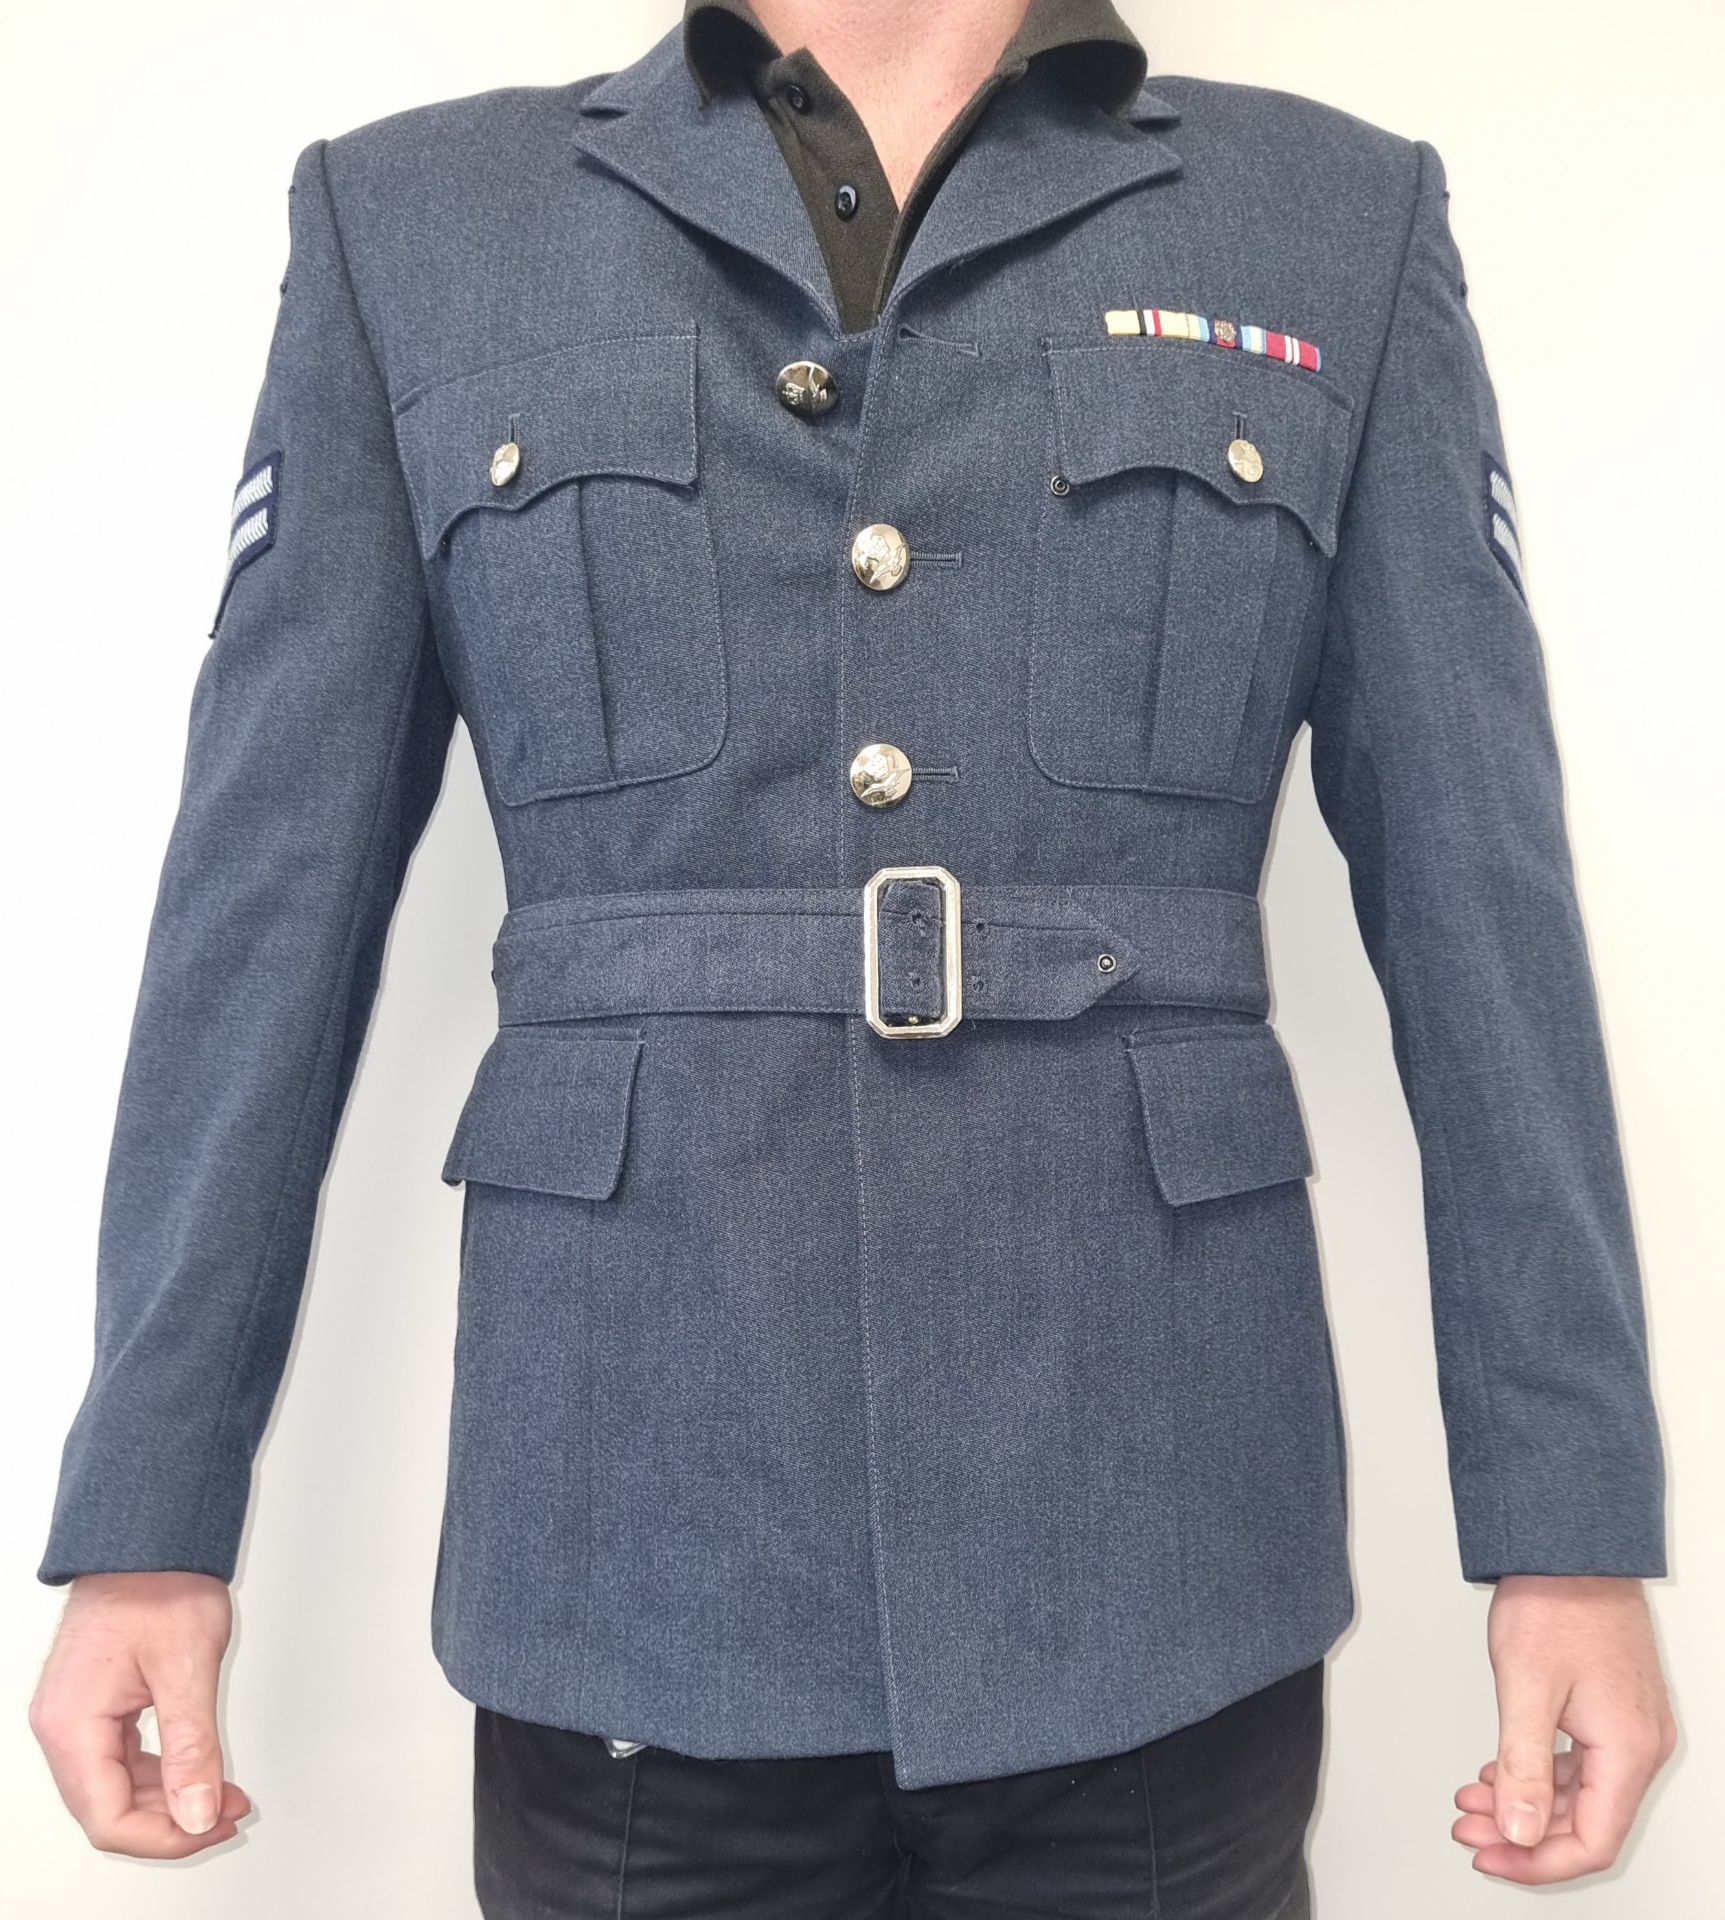 30x British RAF No 1 dress jackets - mixed grades and sizes